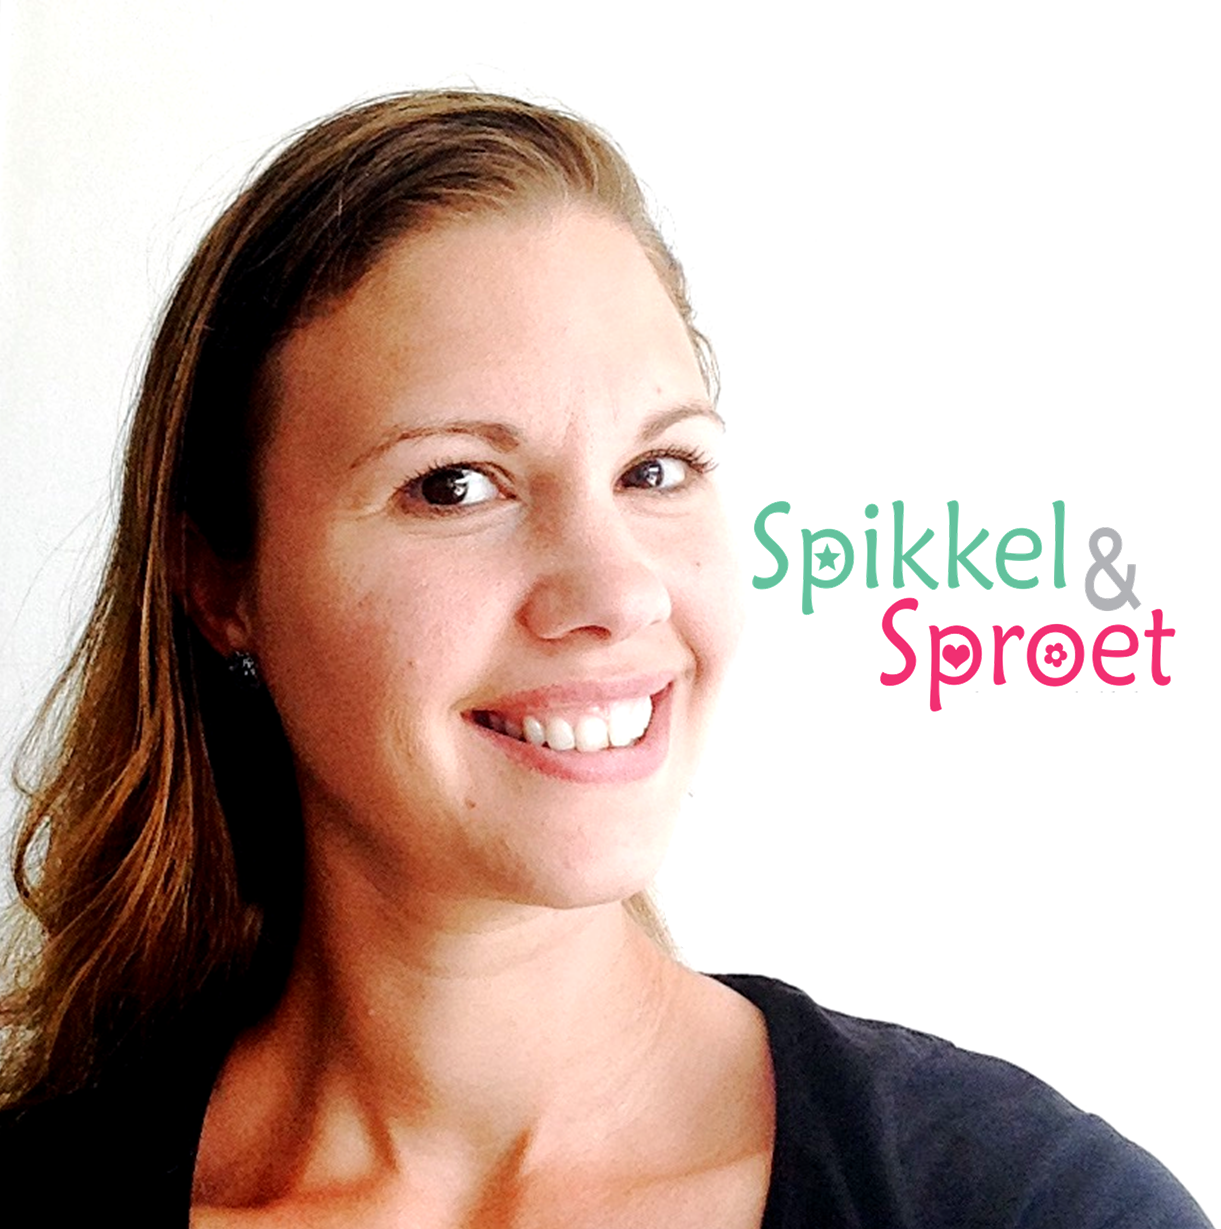 Wie_ben_ik_Marinda_Webshop-_www.spikkel-sproet.nl